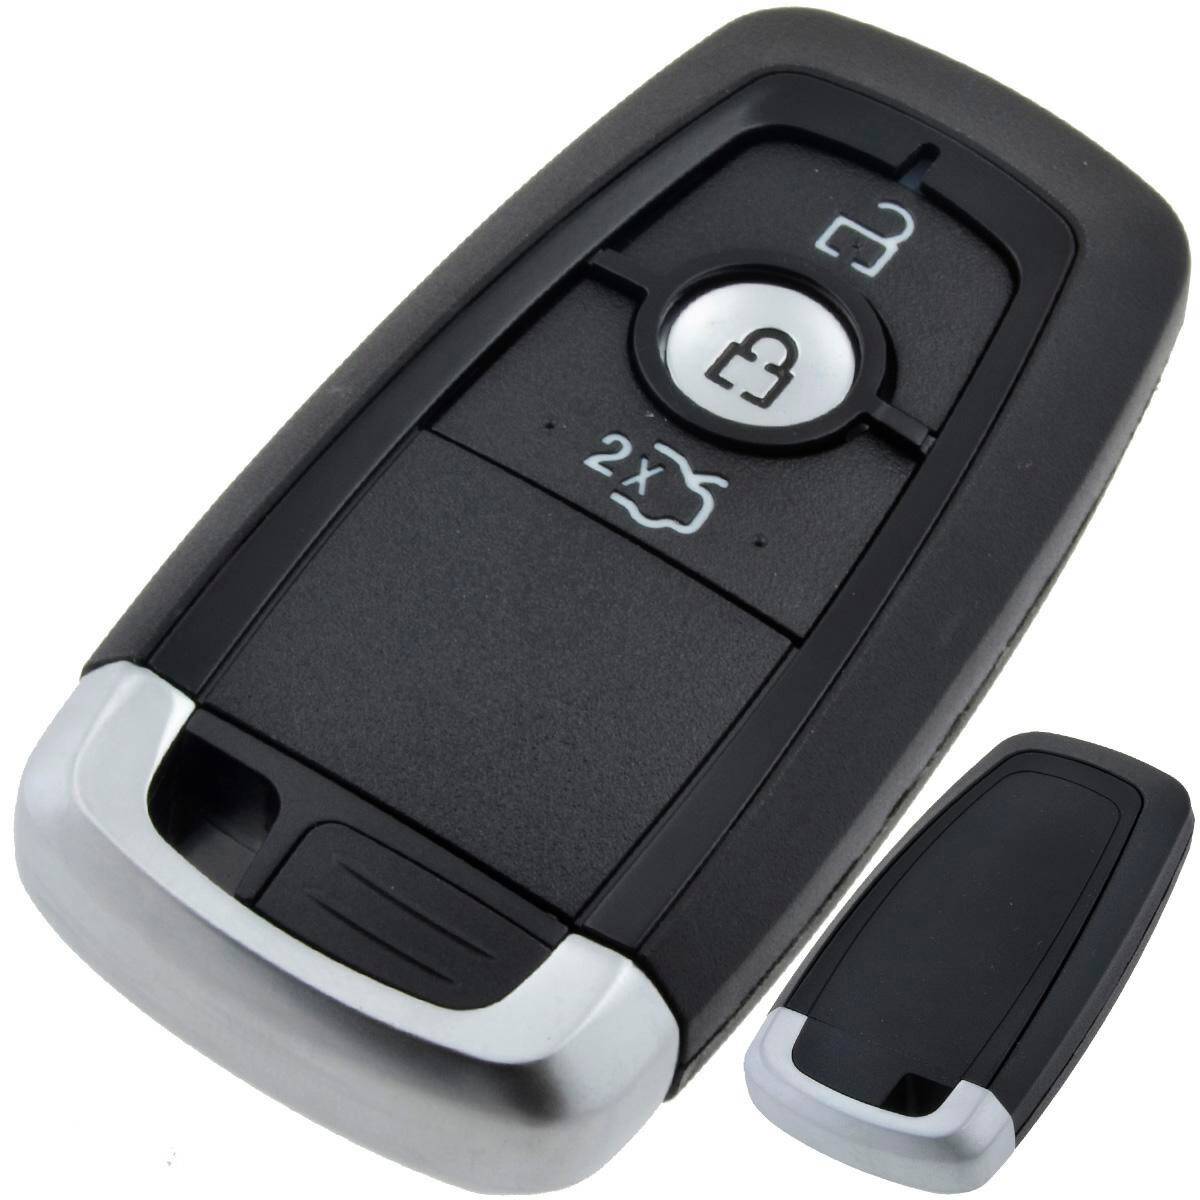 Ford Schlüssel Gehäuse mit 3 Tasten - Mr Key